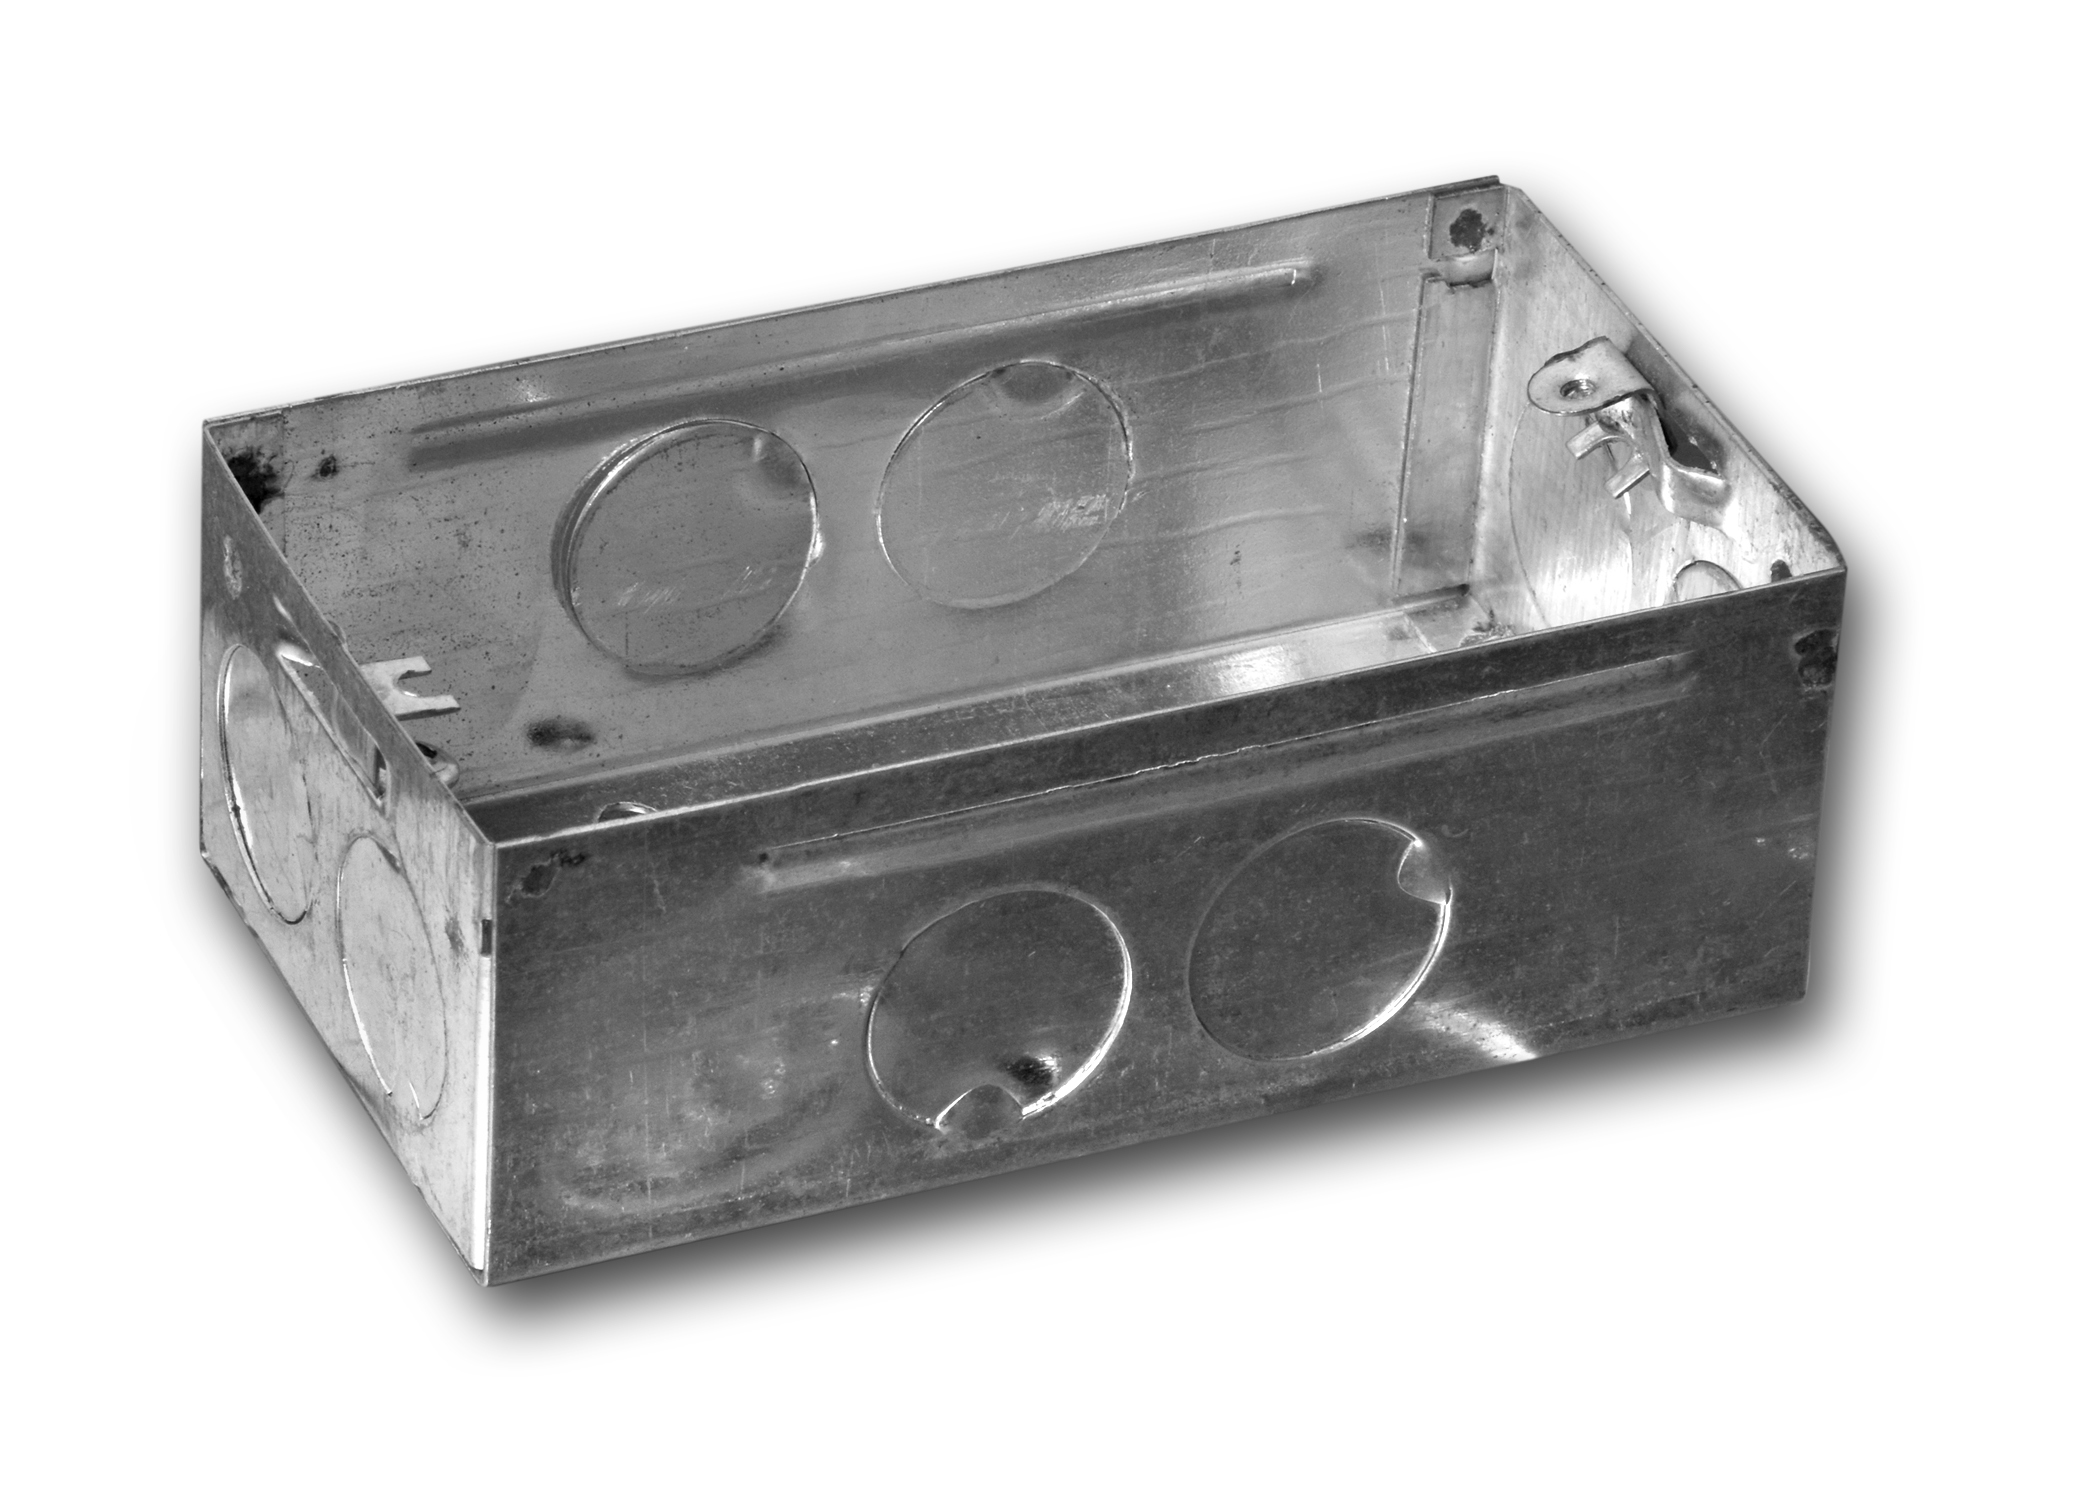 MS Metal Modular Box